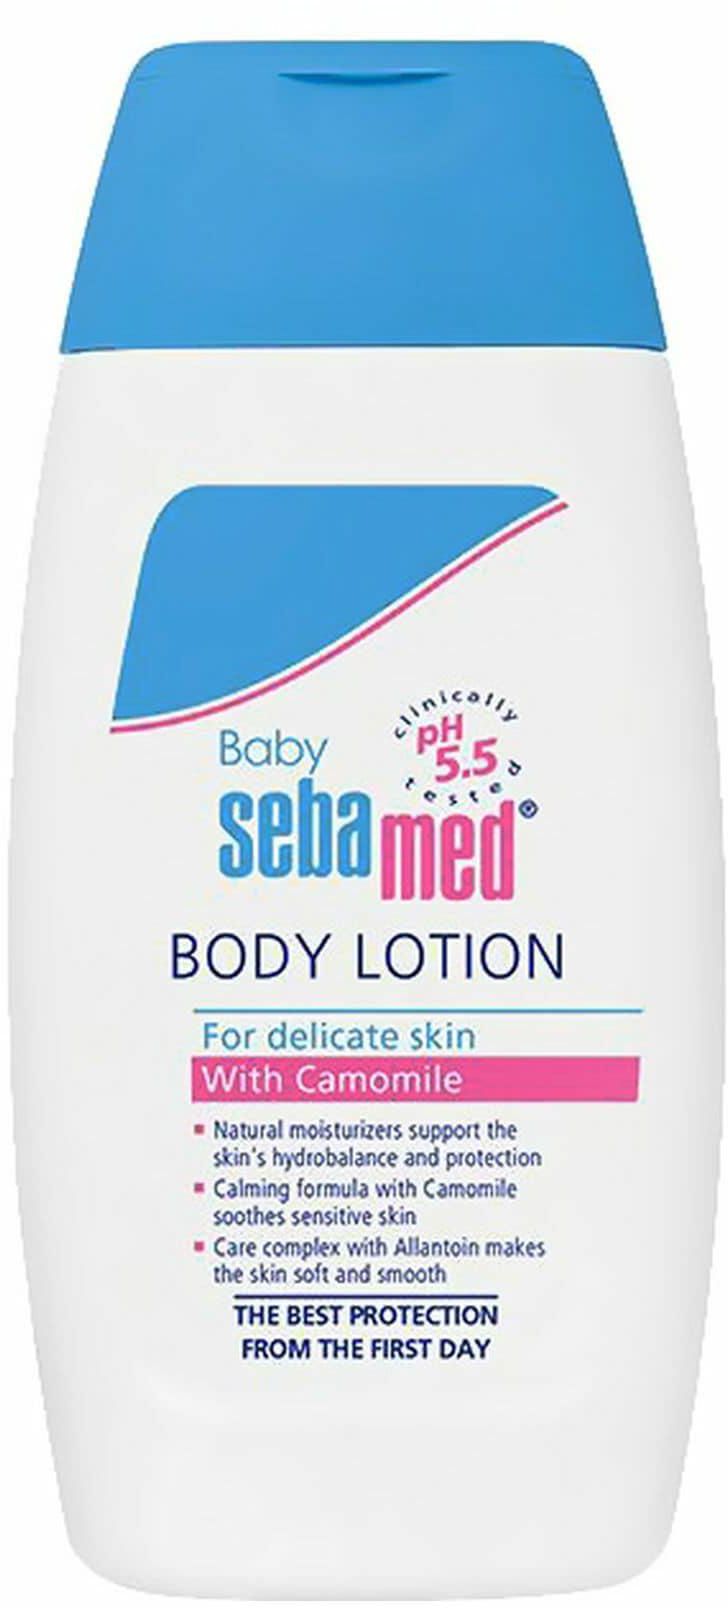 Sebamed Baby Body Lotion 200ml